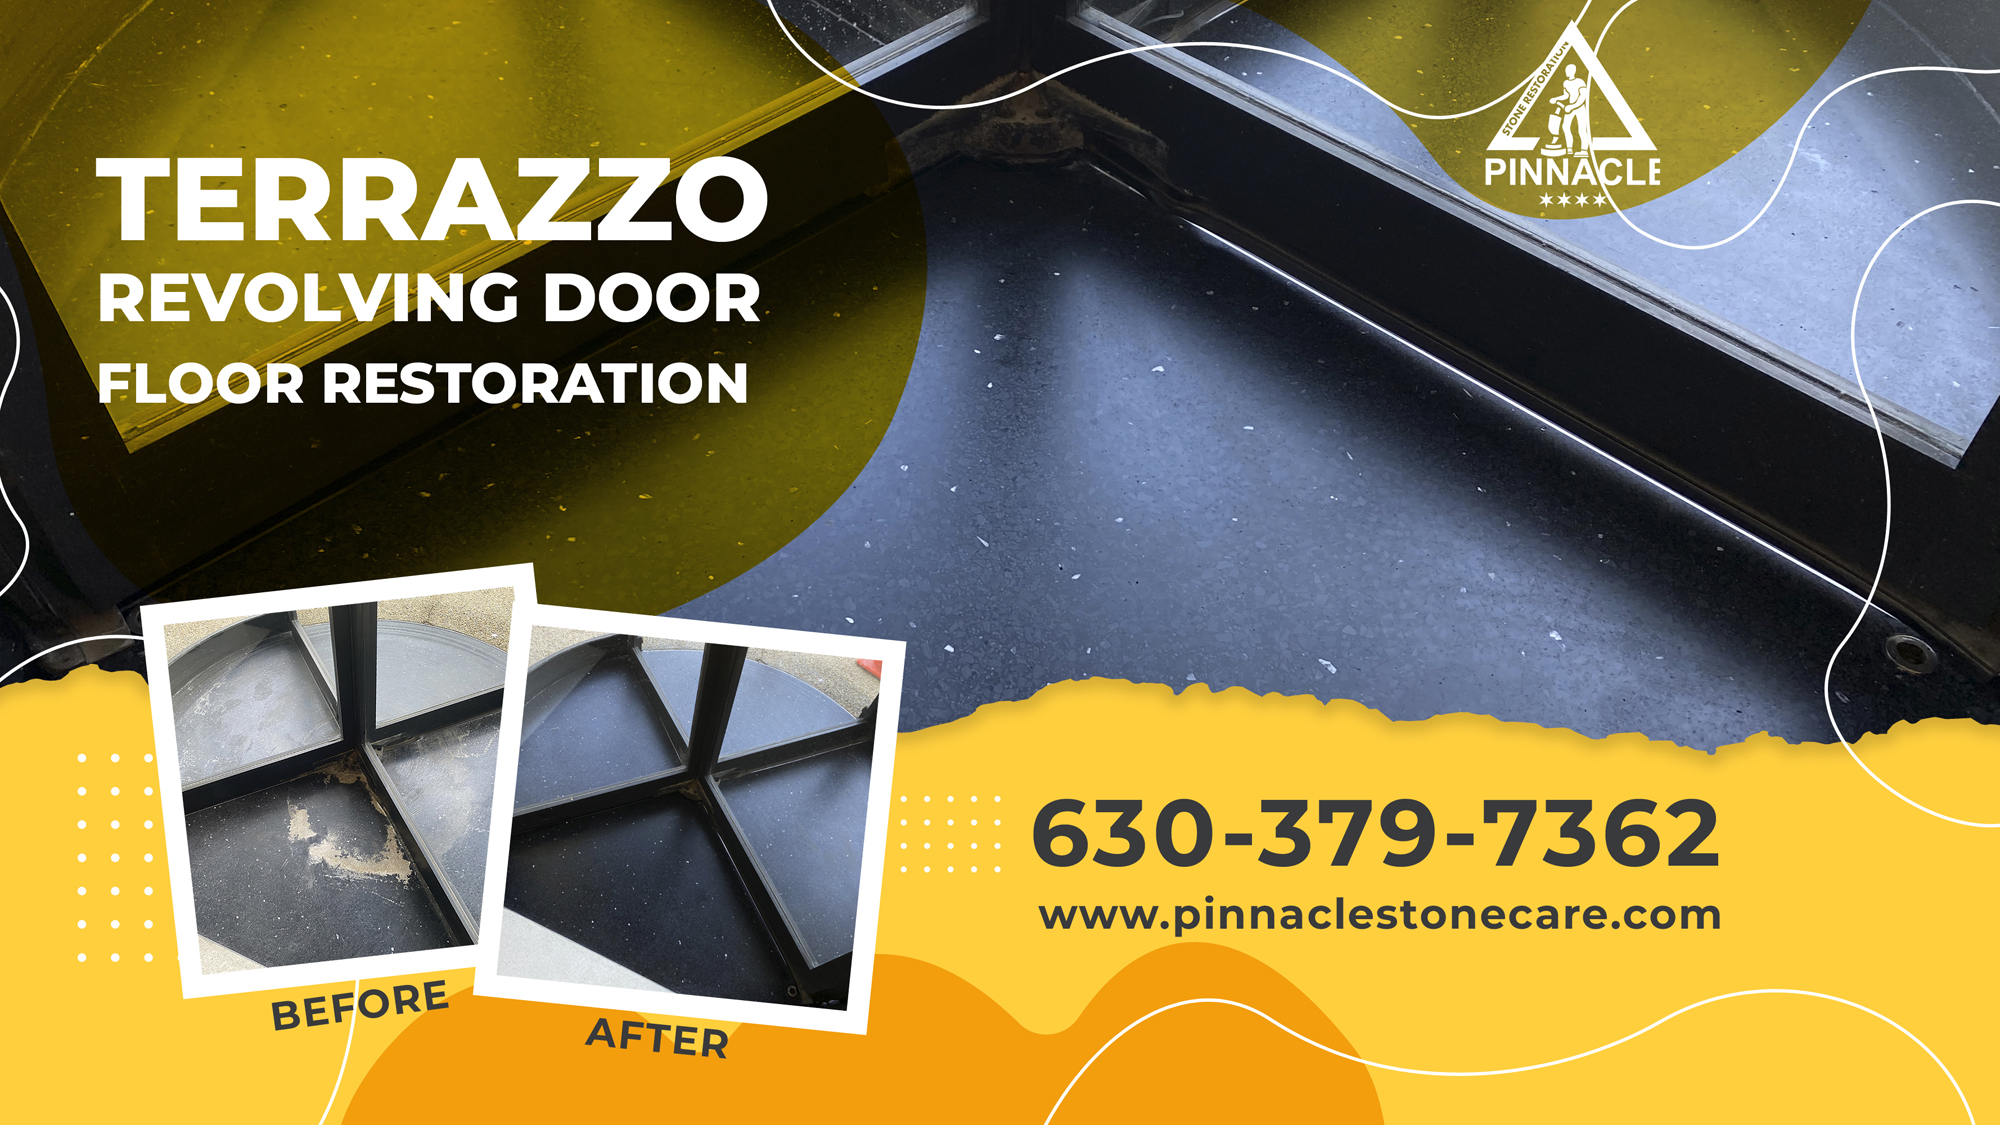 Terrazzo Floor Revolving Door Restoration (Terrazzo grinding, polishing, sealing)